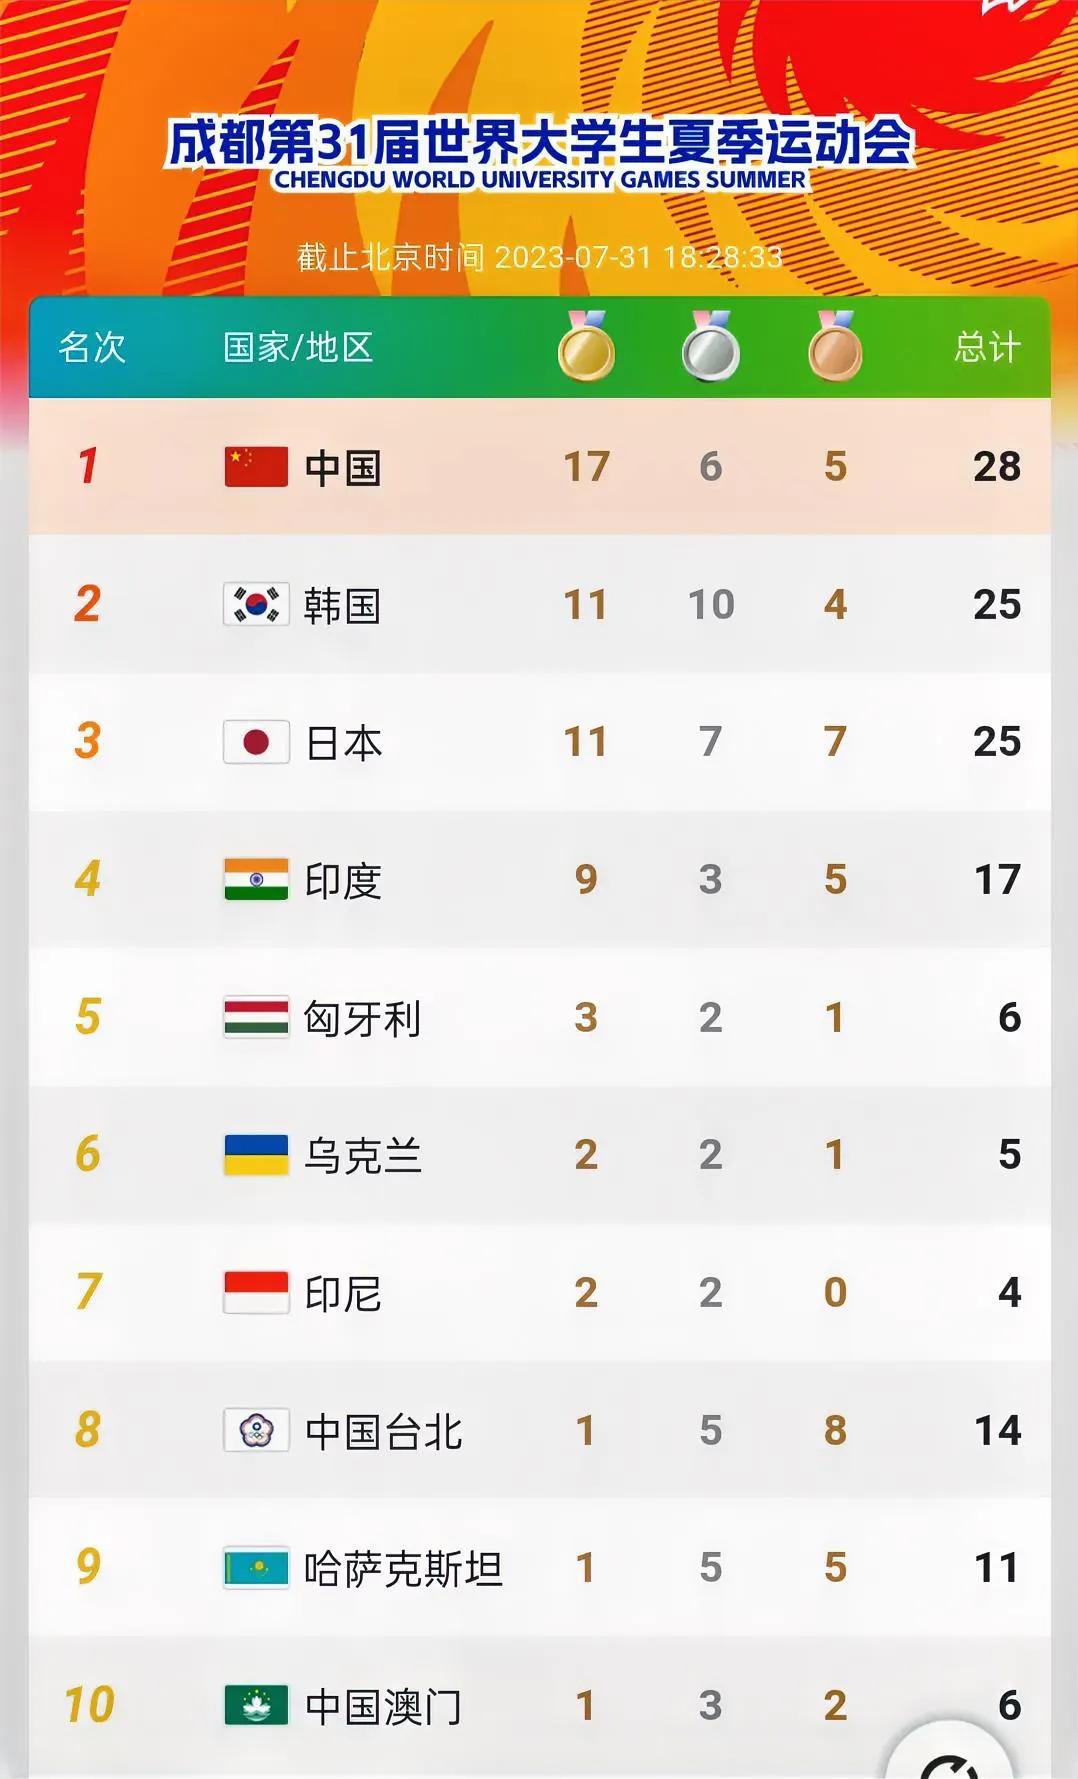 大运会最新奖牌榜

1，中国17金6银5铜共28枚奖牌
2，韩国11金10银4铜